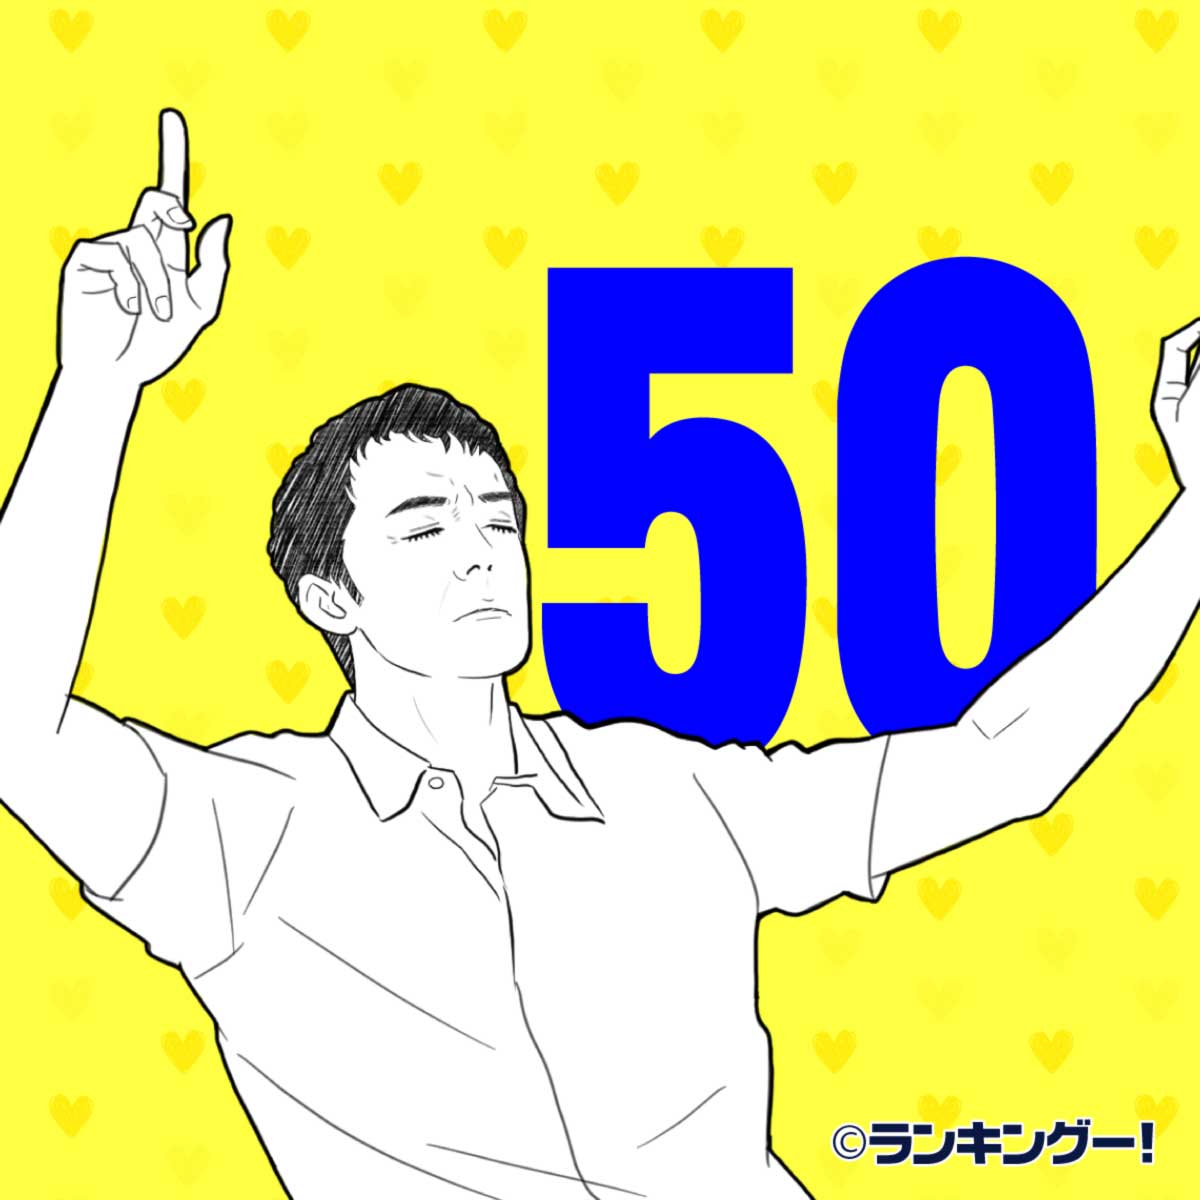 日本のイケオジ かっこいい50 60歳の俳優人気ランキングtop 16 位 ランキングー